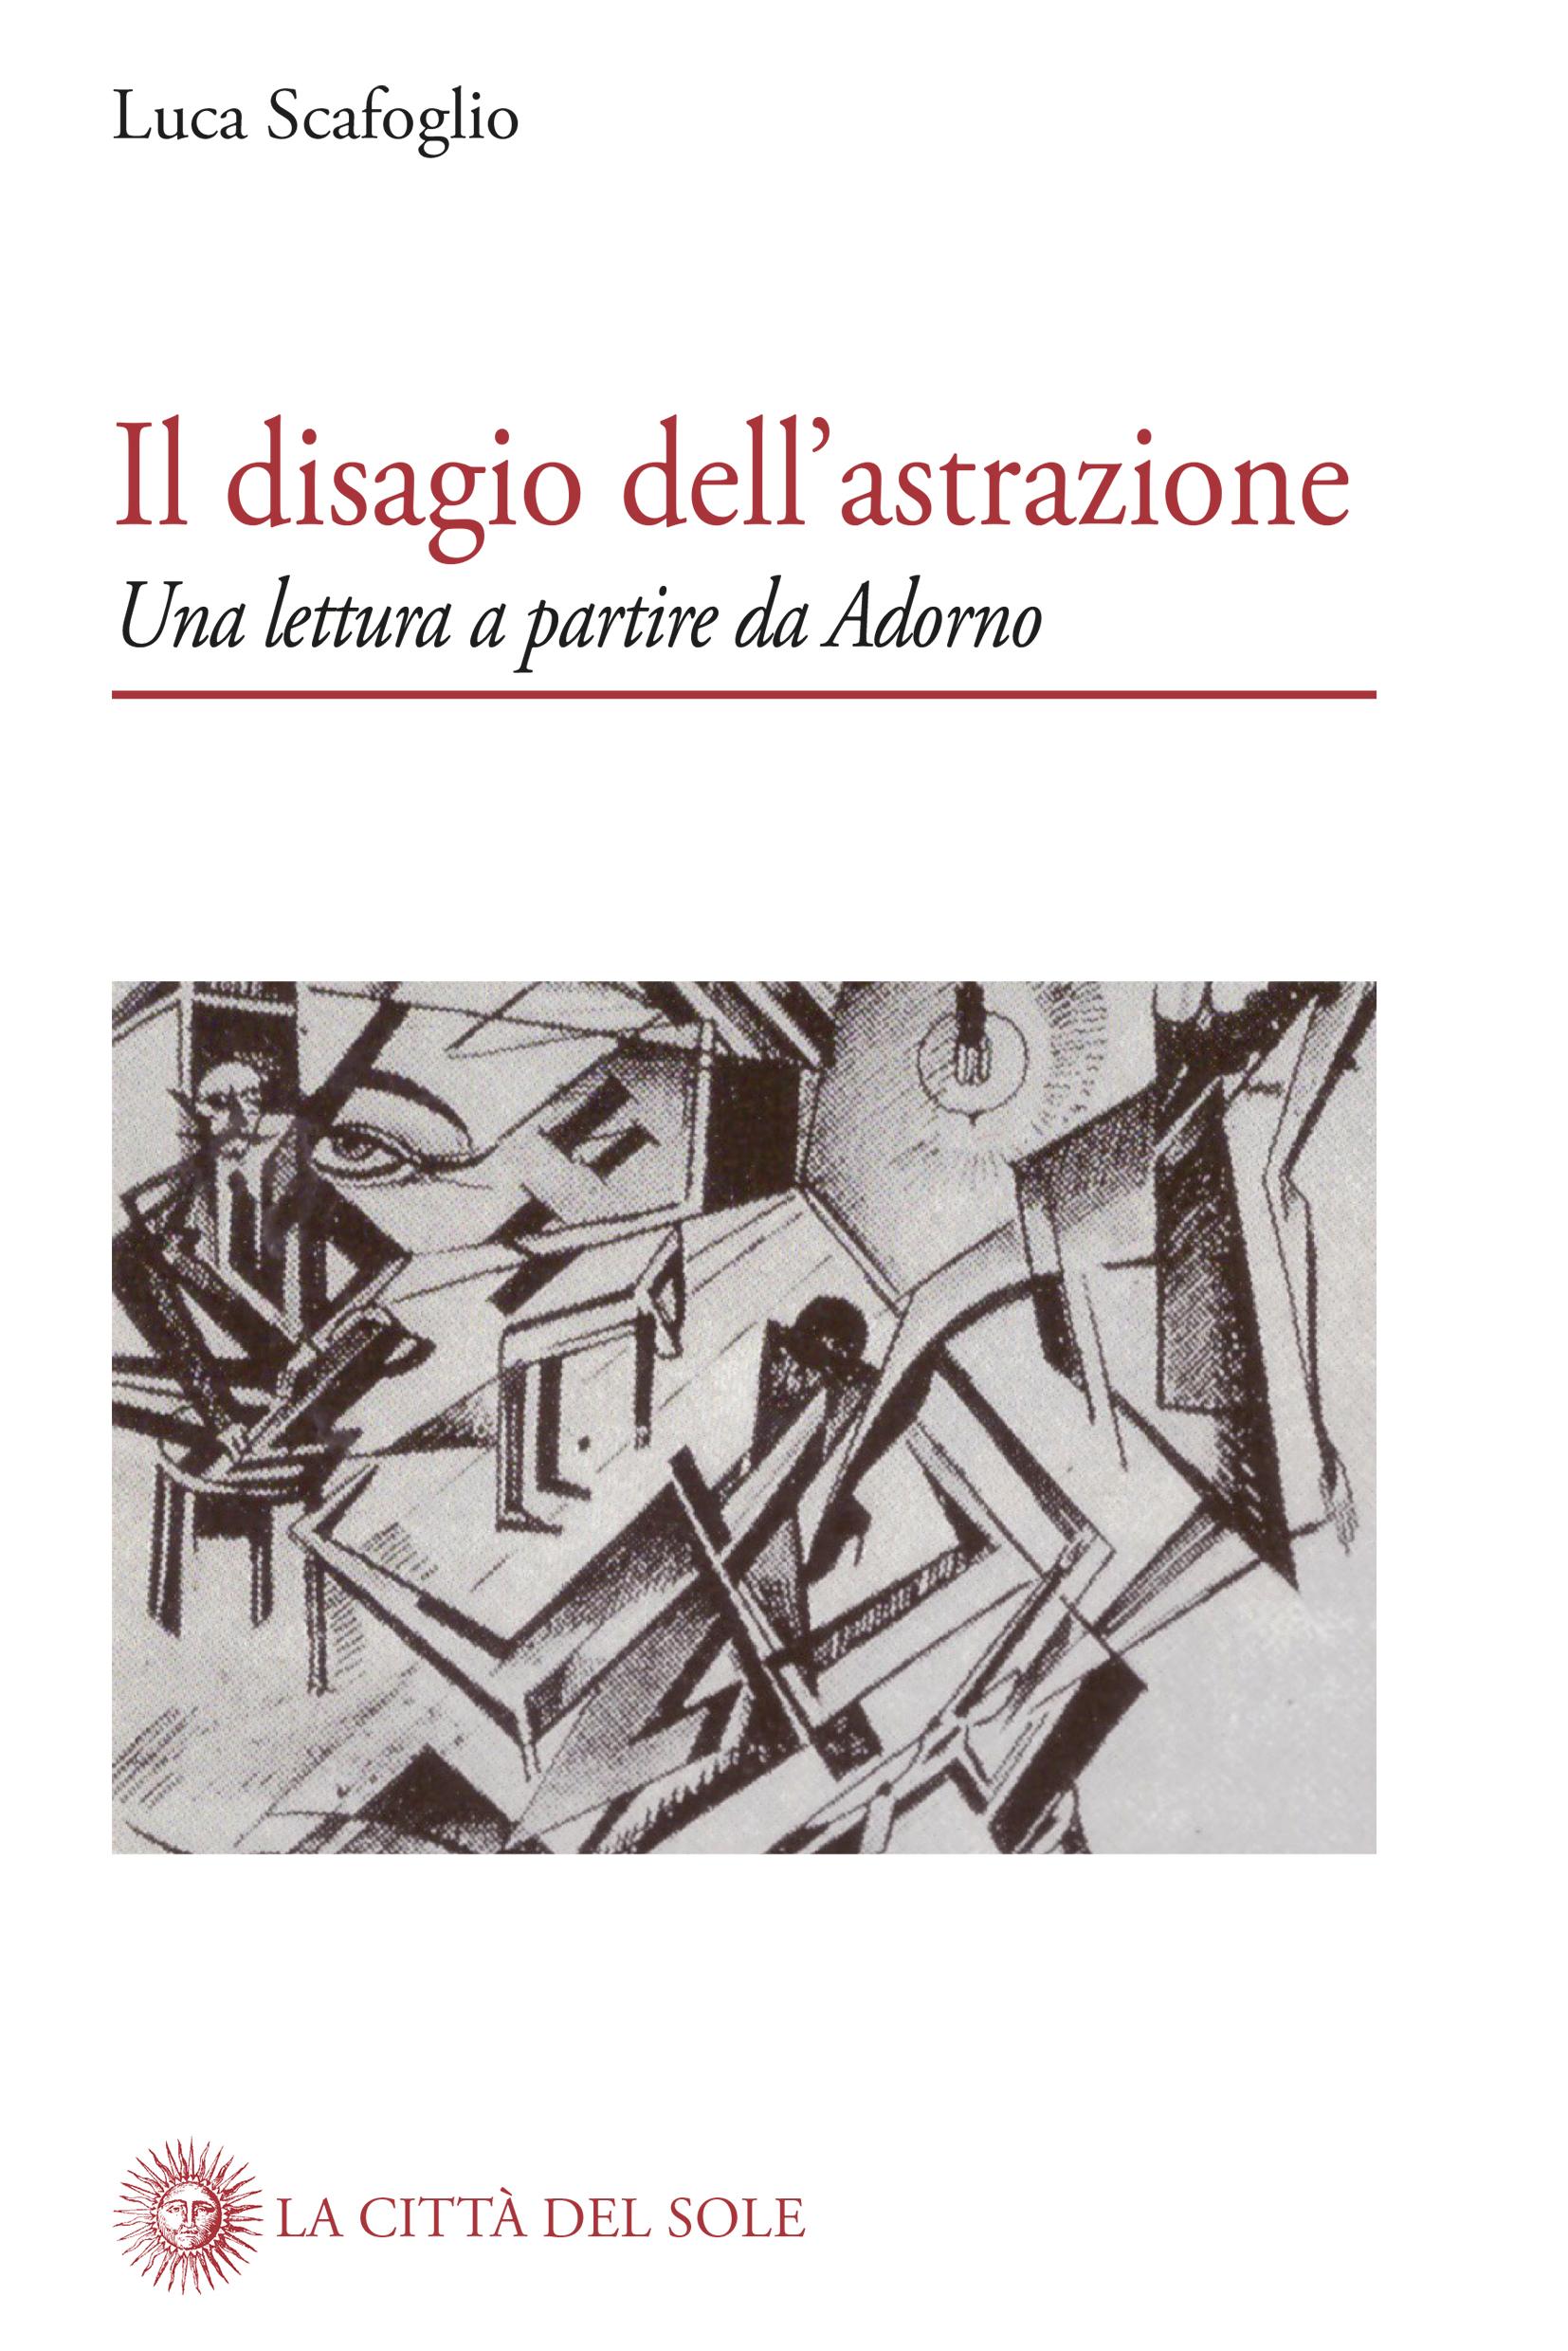 Luca Scafoglio • Il disagio dell’astrazione. Una lettura a partire da Adorno